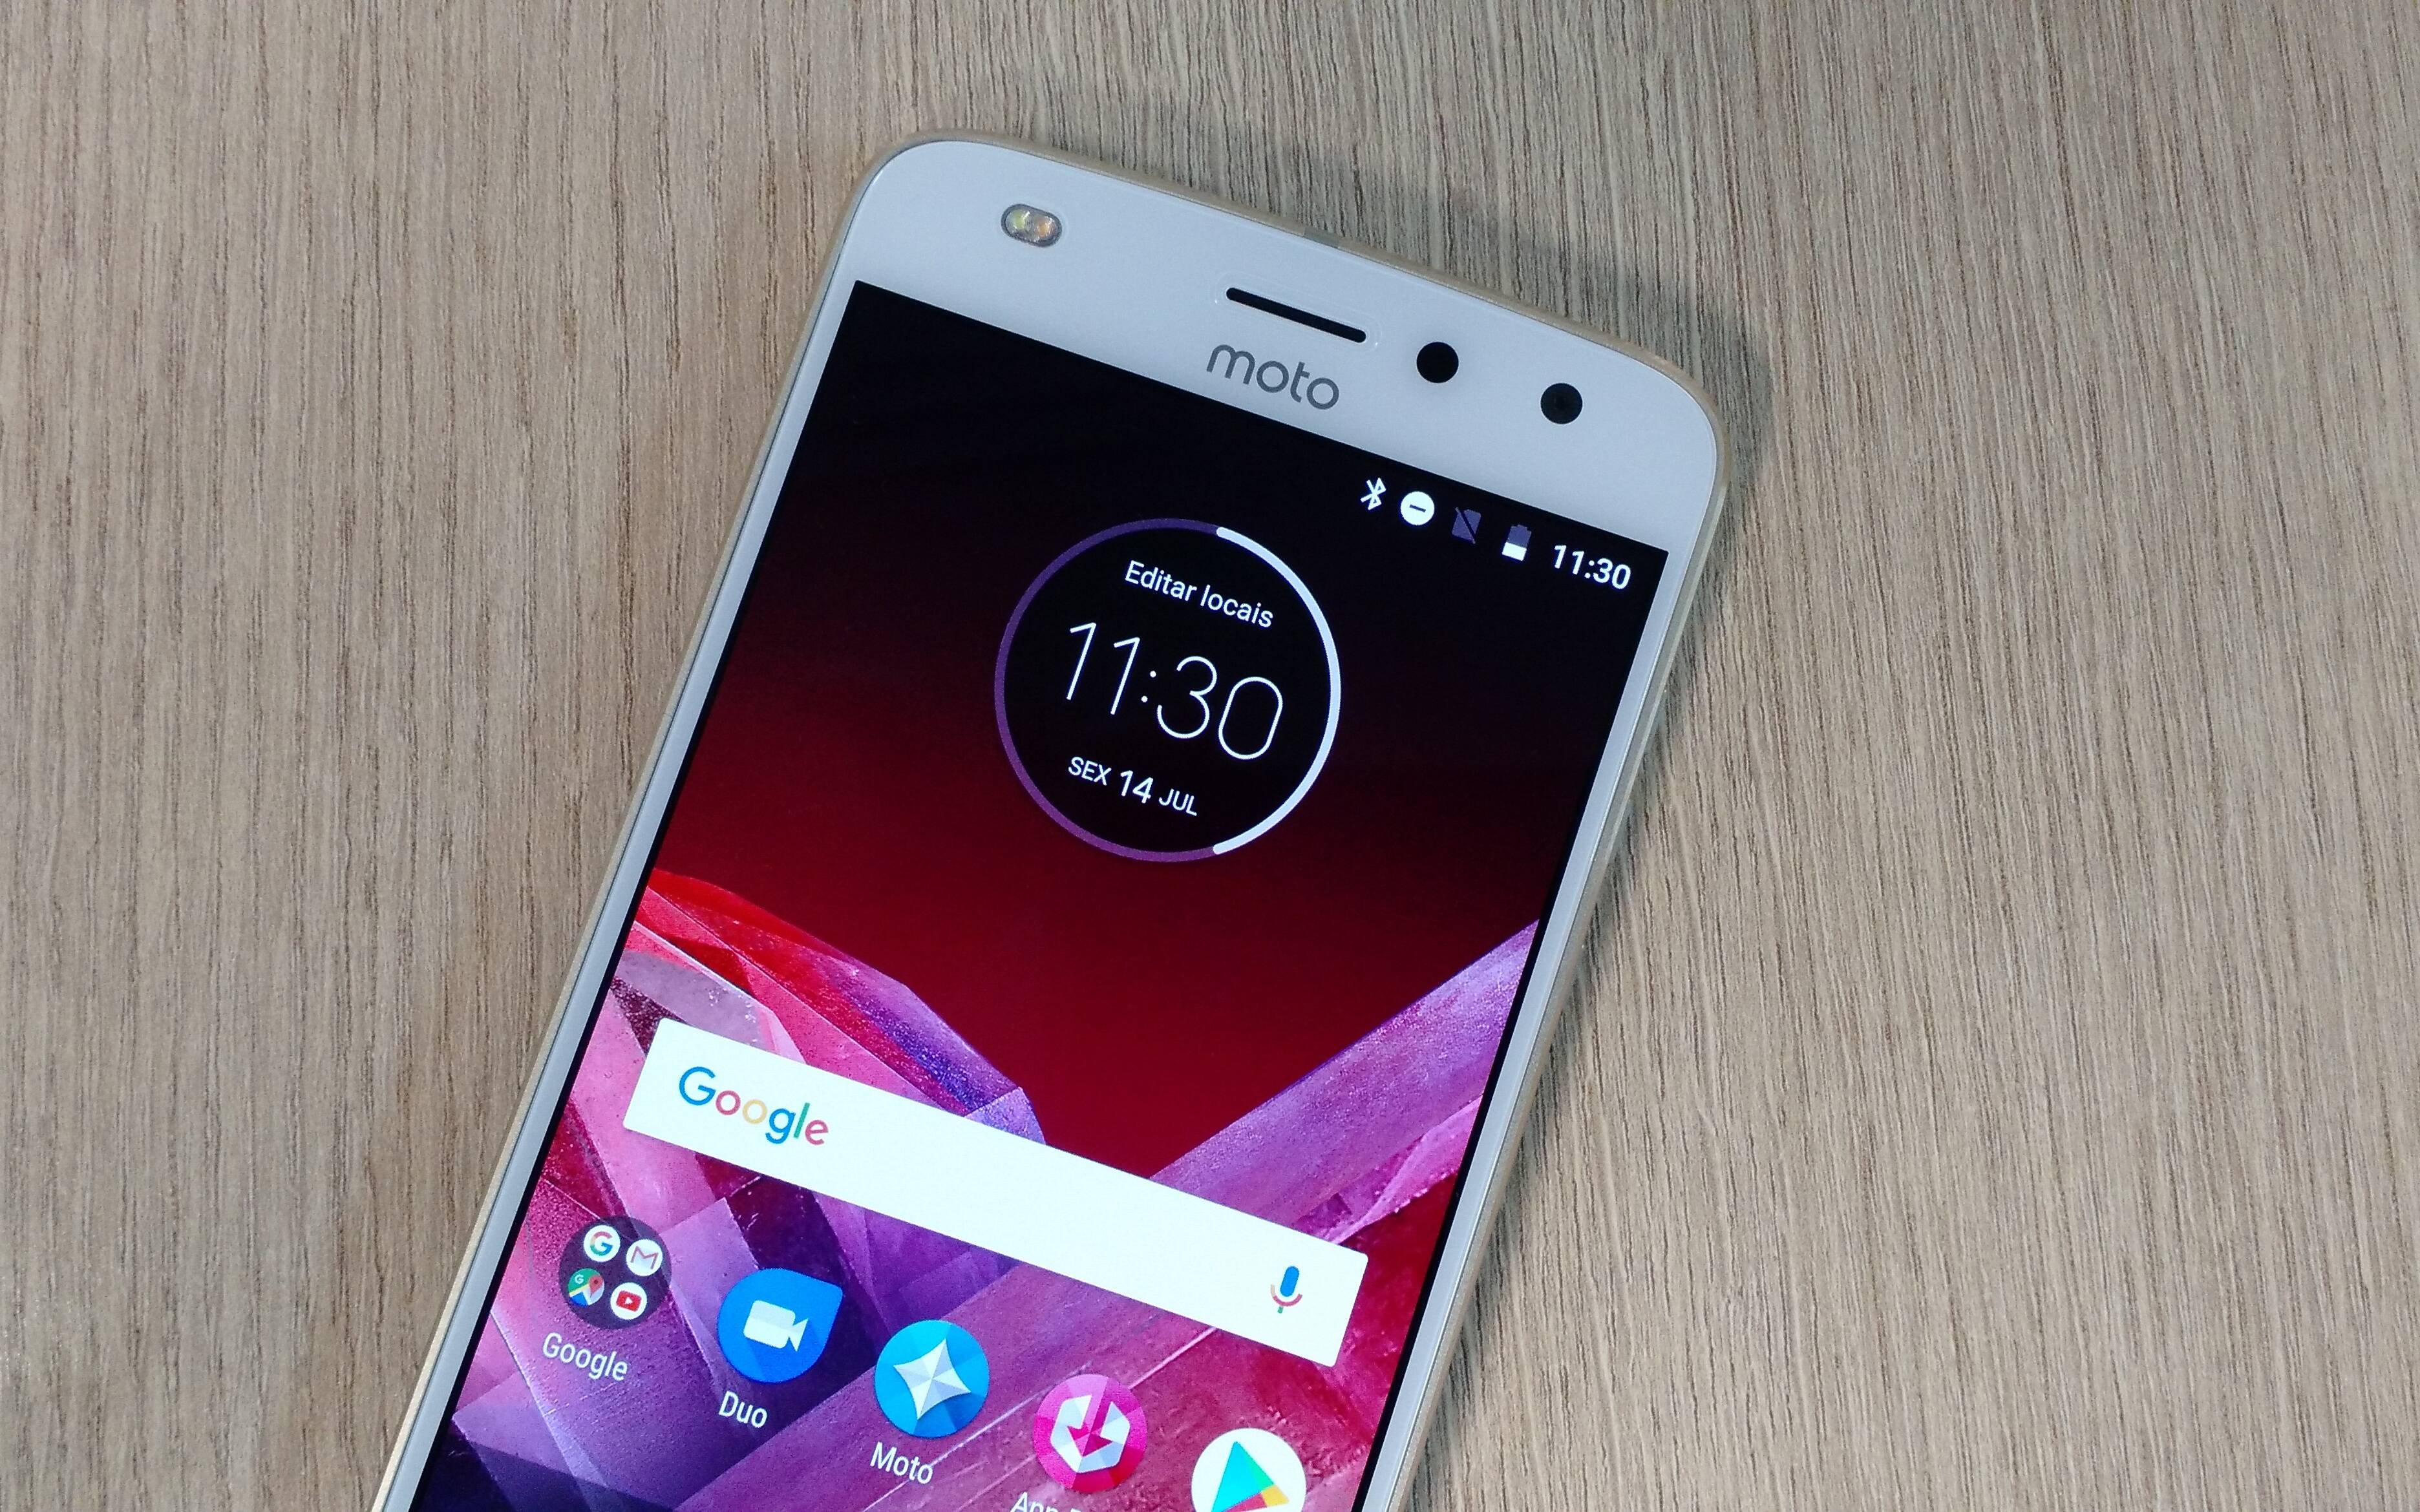 Moto Z2 Play conta com Android 7.1.1 Nougat, tela de 5,5 polegadas e câmera frontal de 5 megapixels. Foto: Victor Hugo Silva - Brasil Econômico